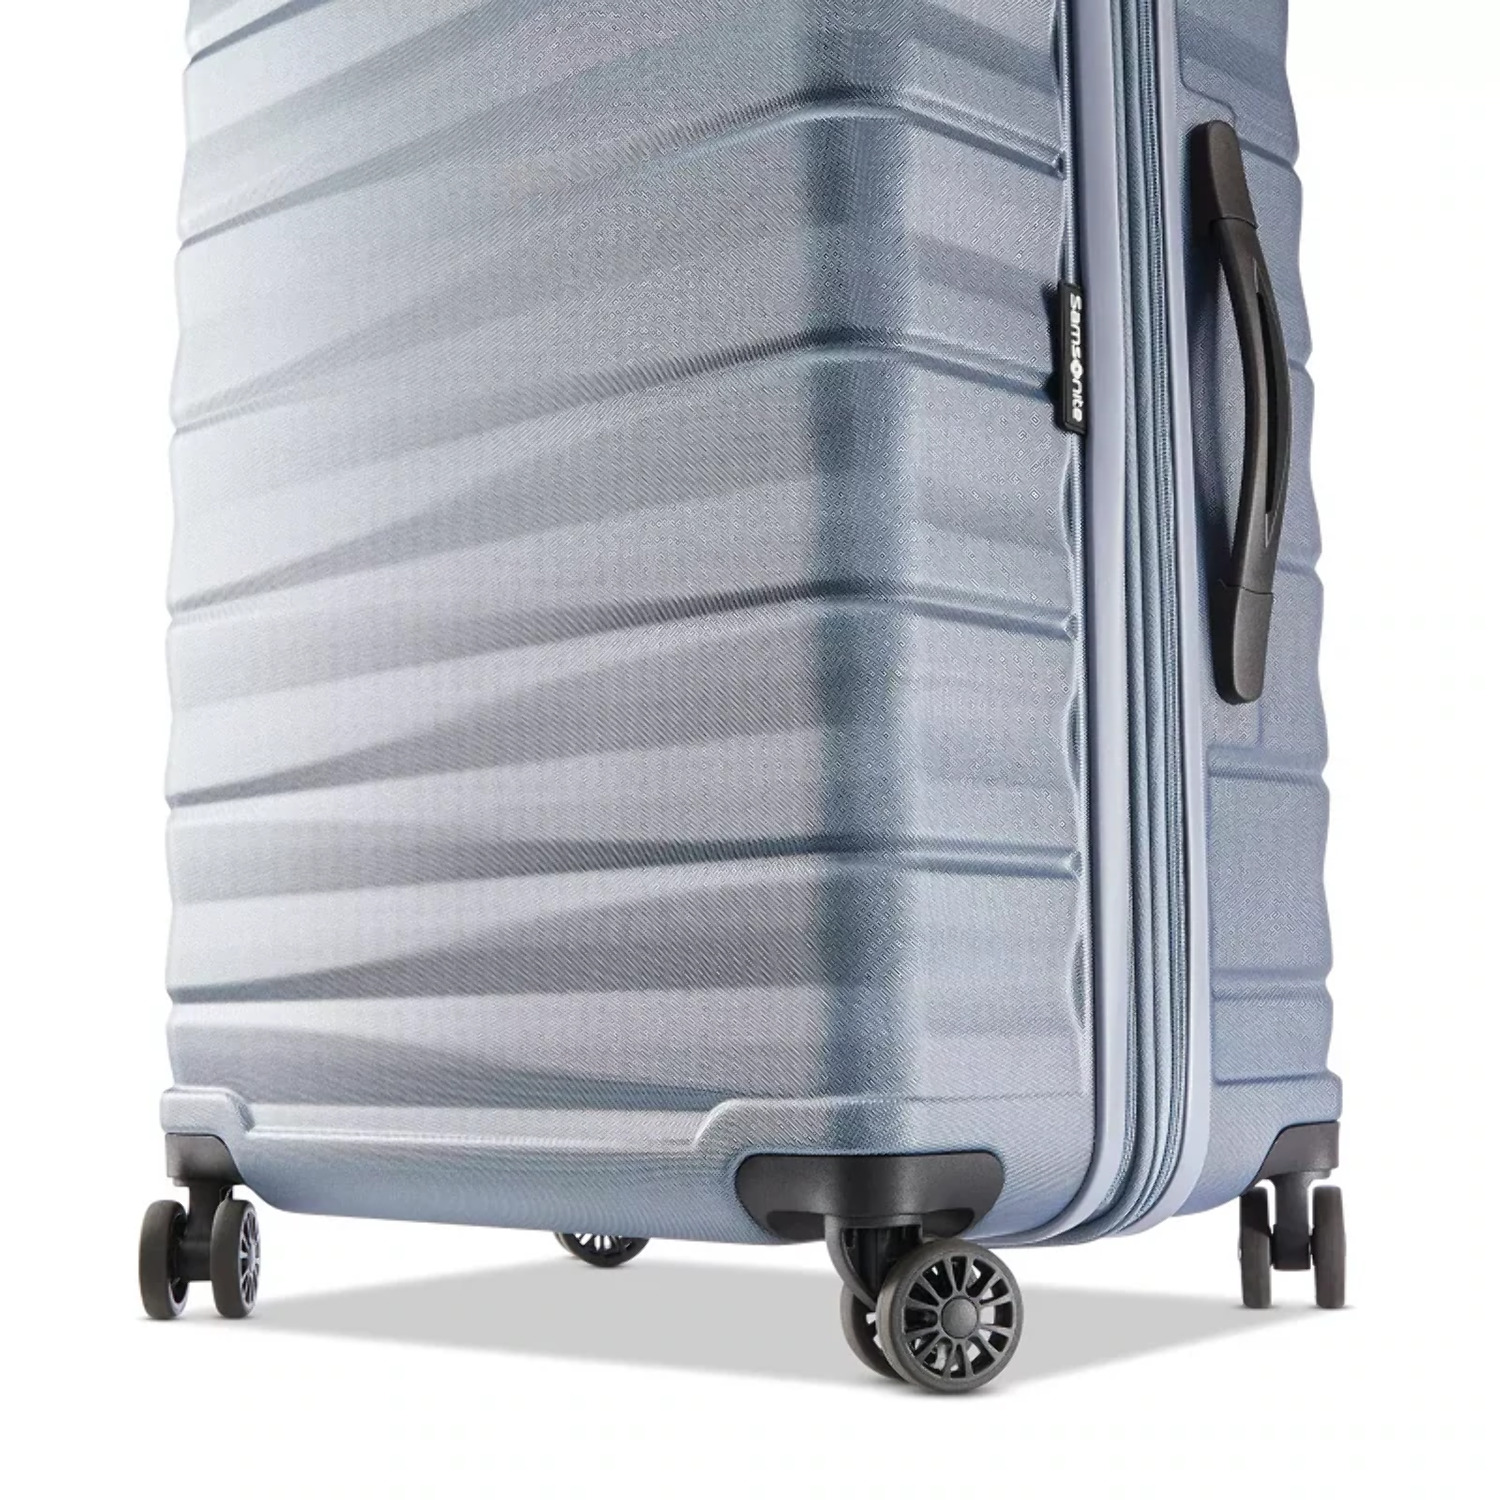 Samsonite Kingsbury Hardside Suitcase 2-Piece Luggage Set - Slate Blue - New - image 9 of 11